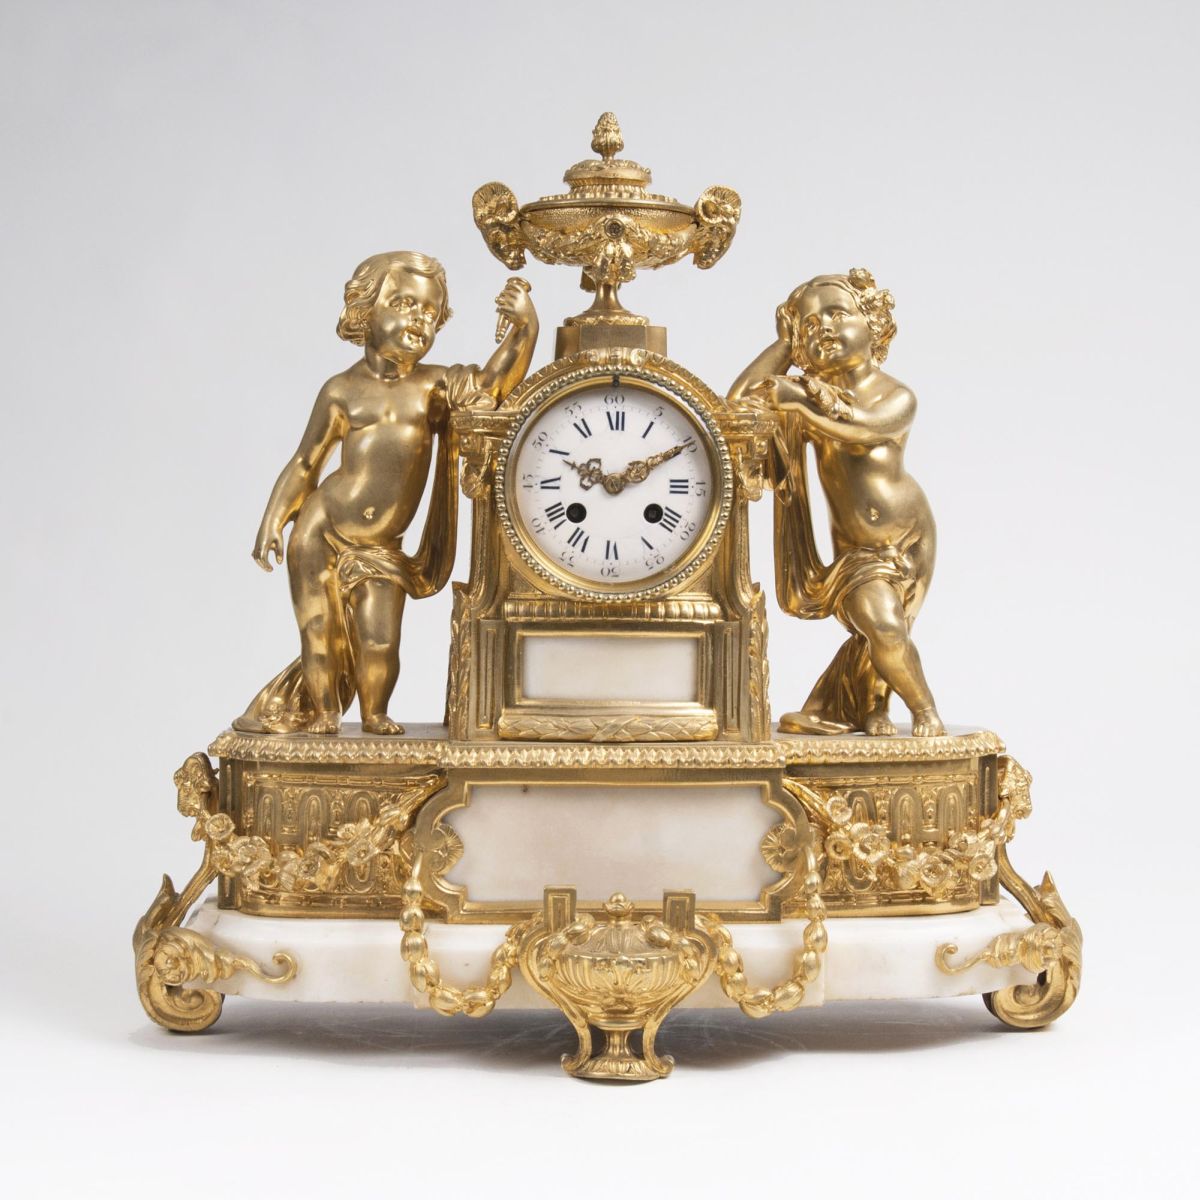 A Napoleon III Pendulum with Putto Figures